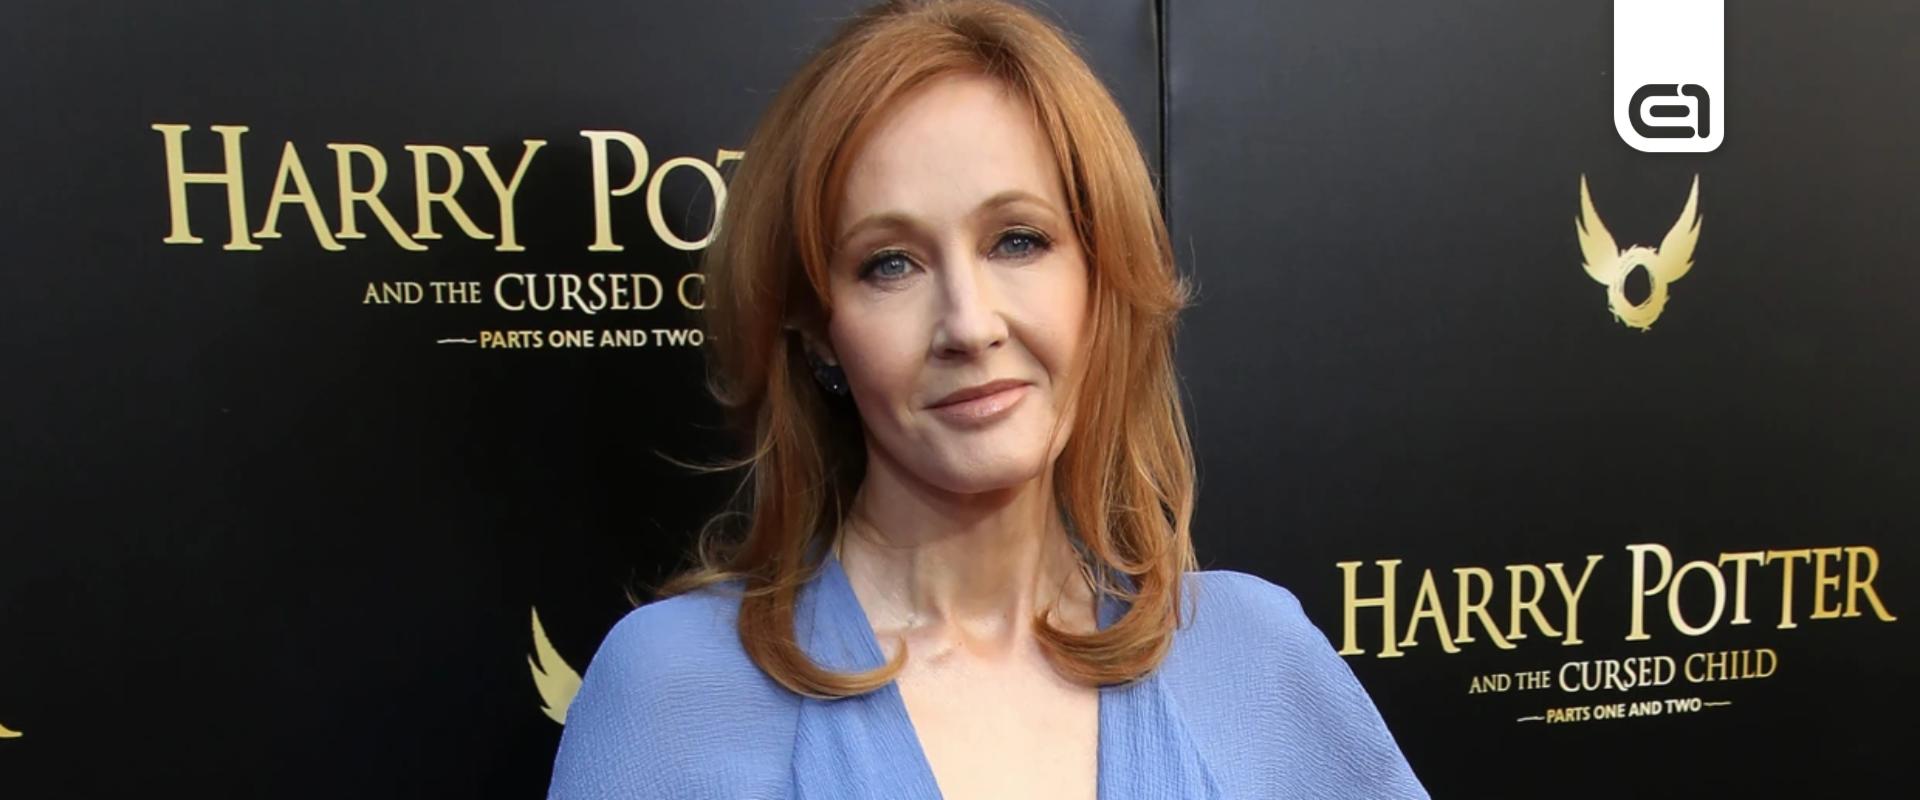 Kirakták egy múzeumból a Dementornak titulált J. K. Rowlingot a transzfób megjegyzései miatt